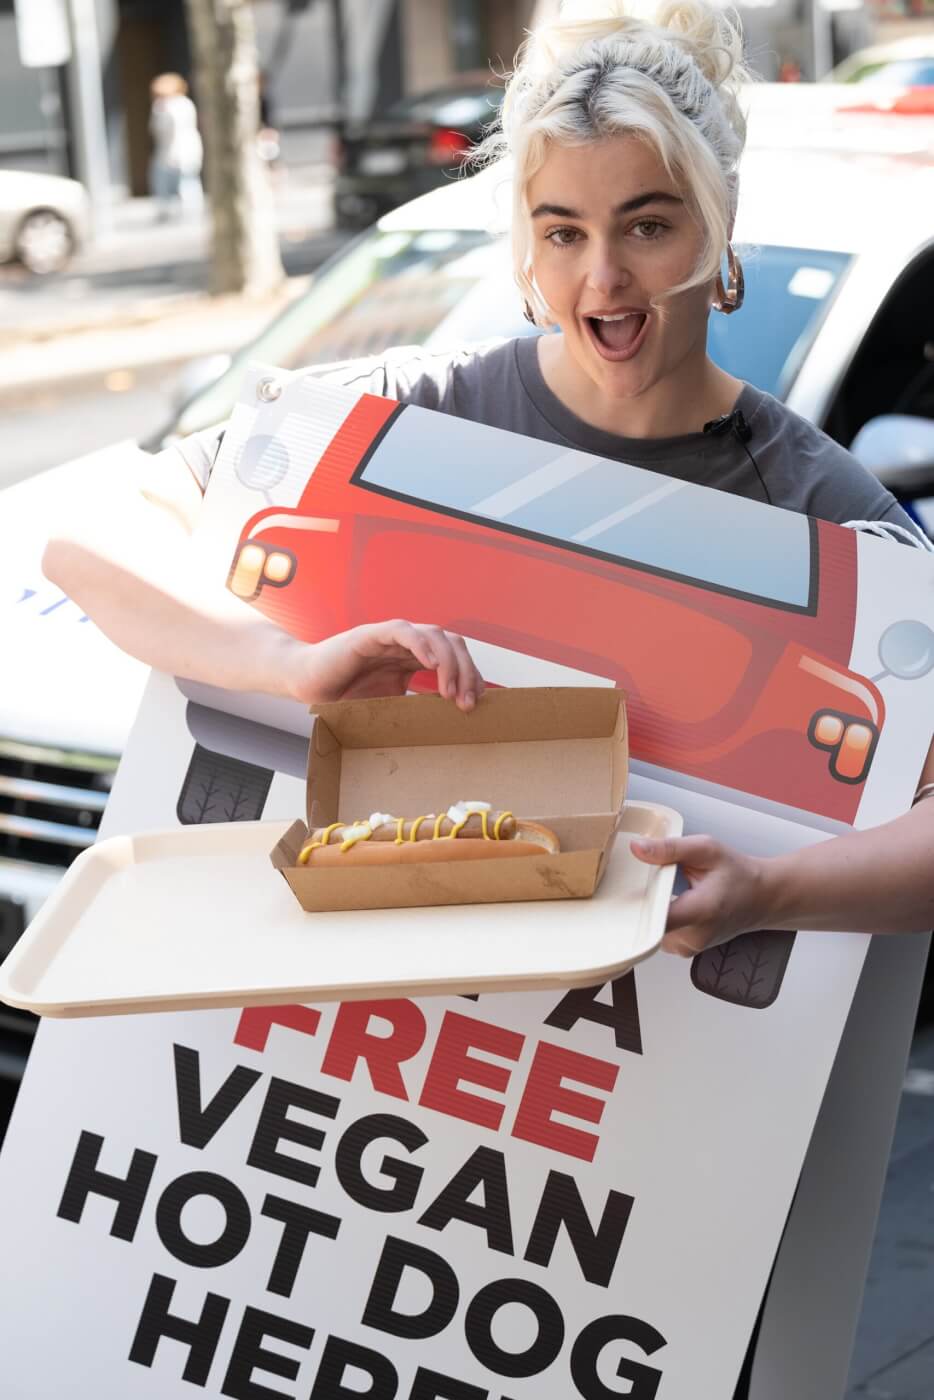 Stefania with a vegan hot dog